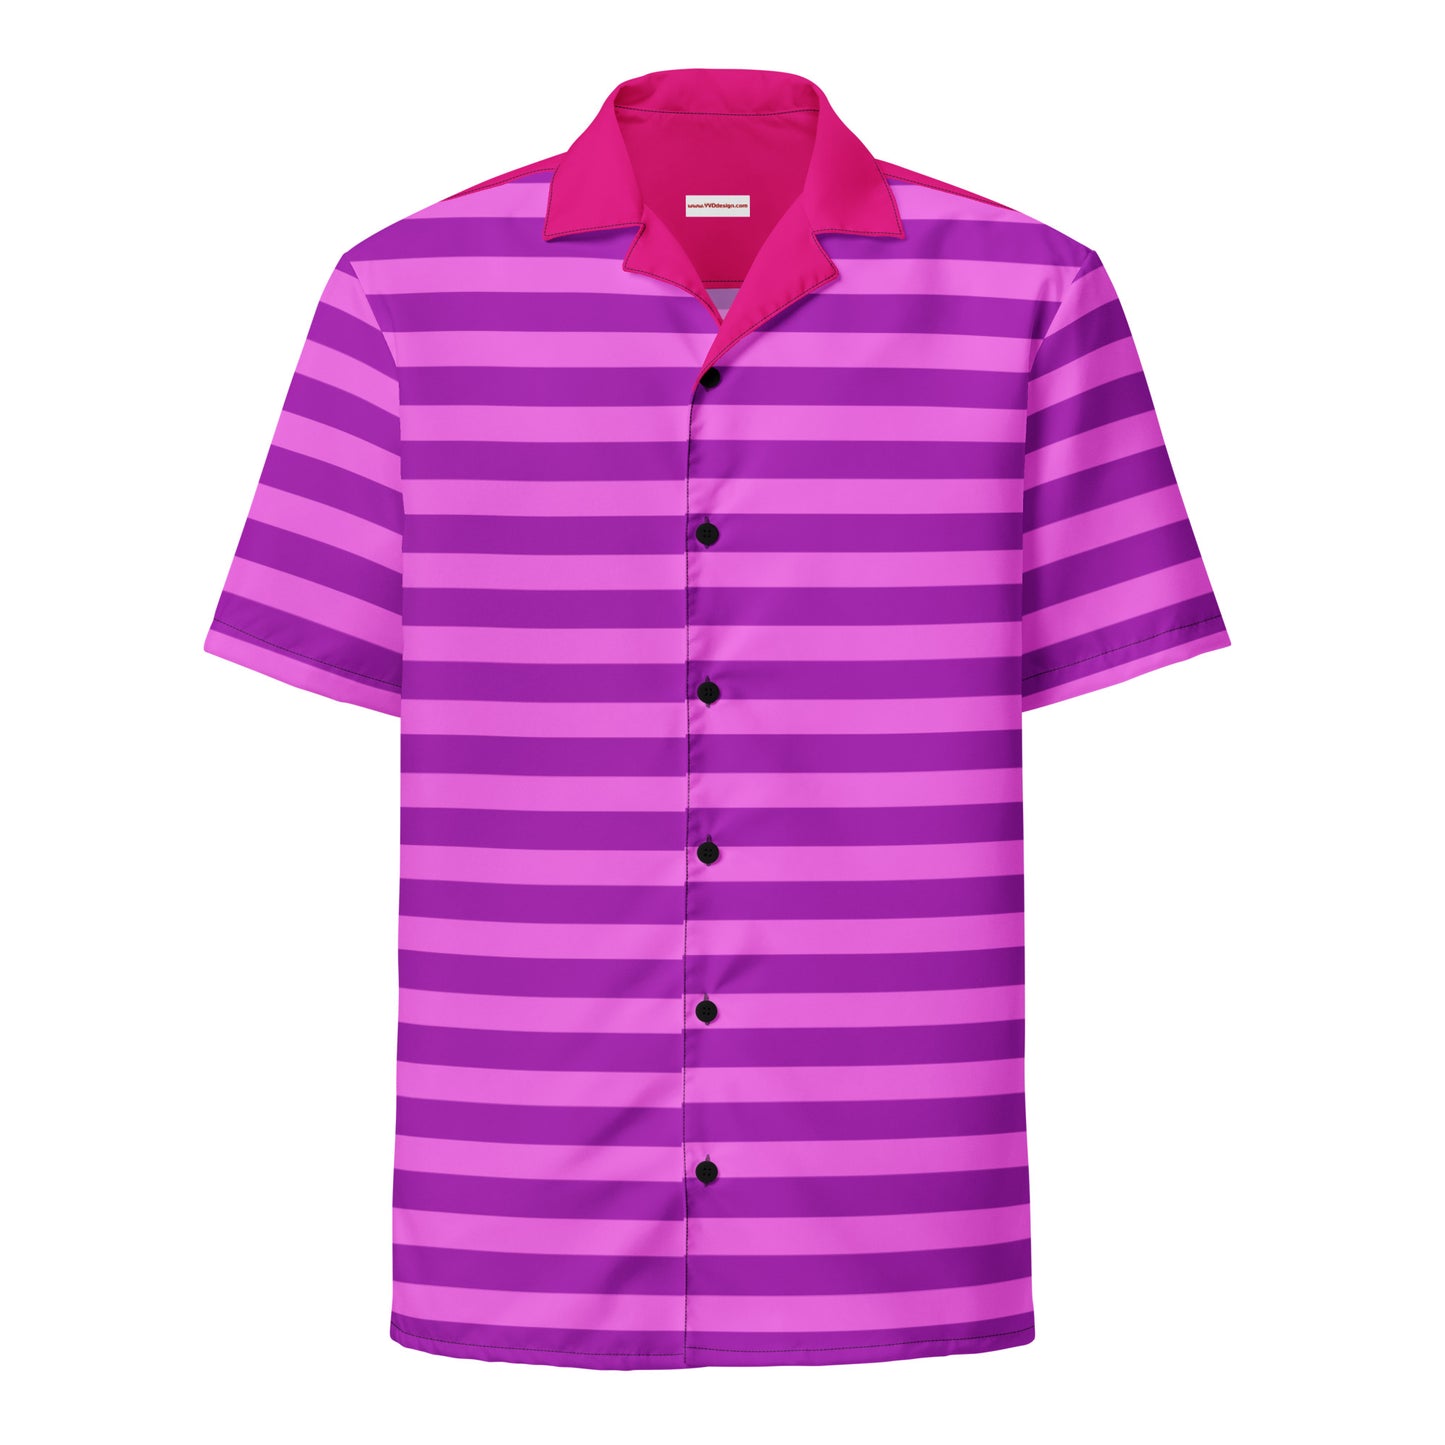 Tenue de chemise à rayures roses / Chemise à manches courtes avec boutons